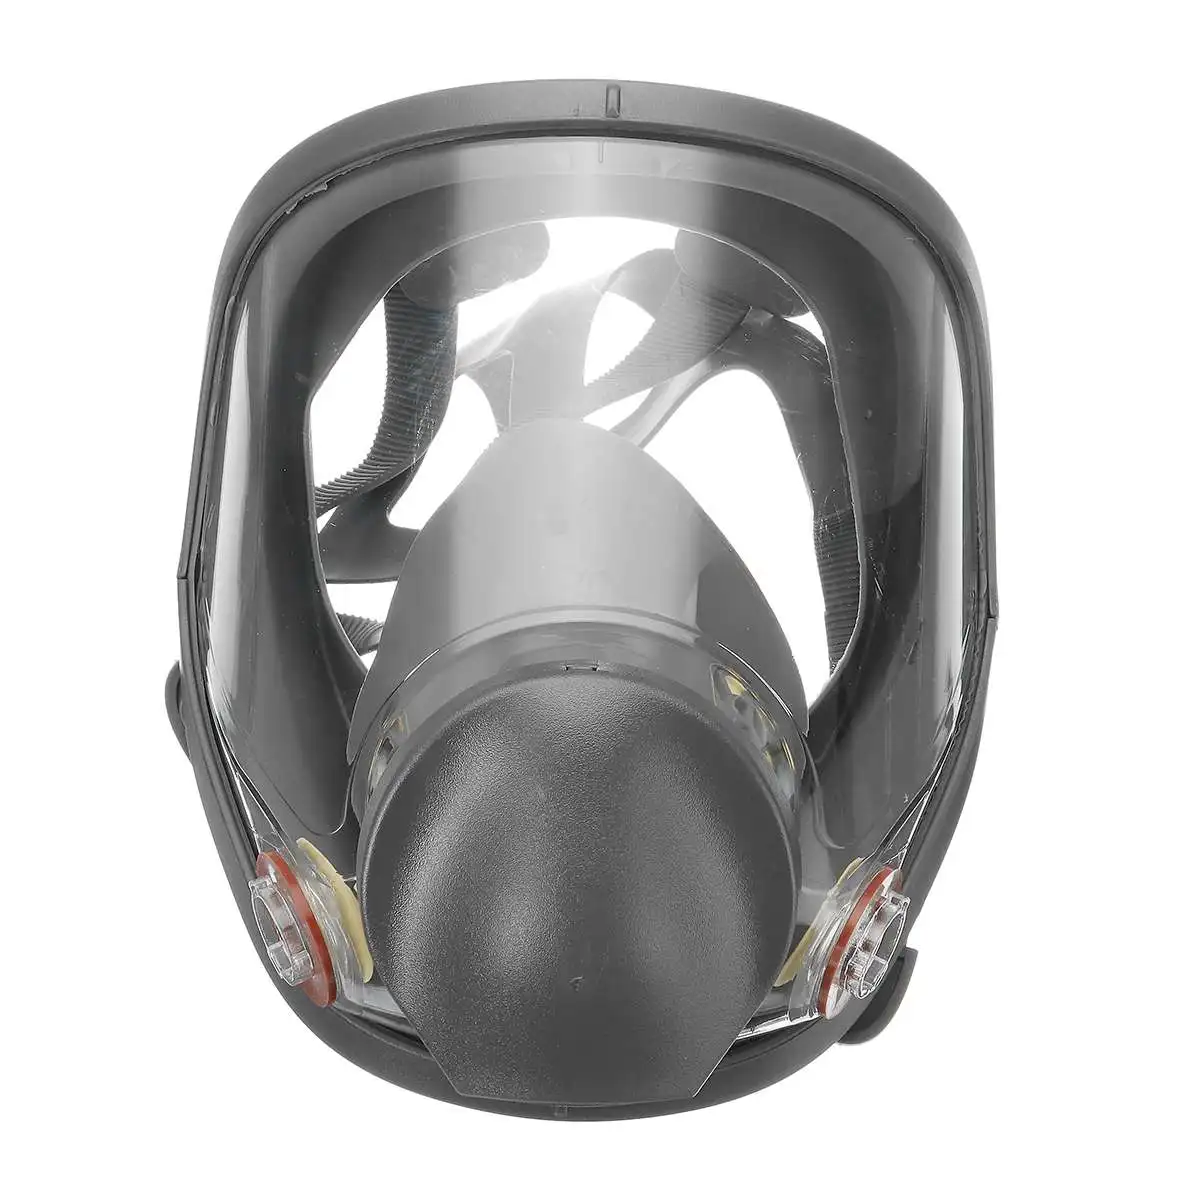 Автоматический фильтр, противогаз, фильтры, респиратор для всего лица, защитная маска против пыли, органический PM 2,5, туман